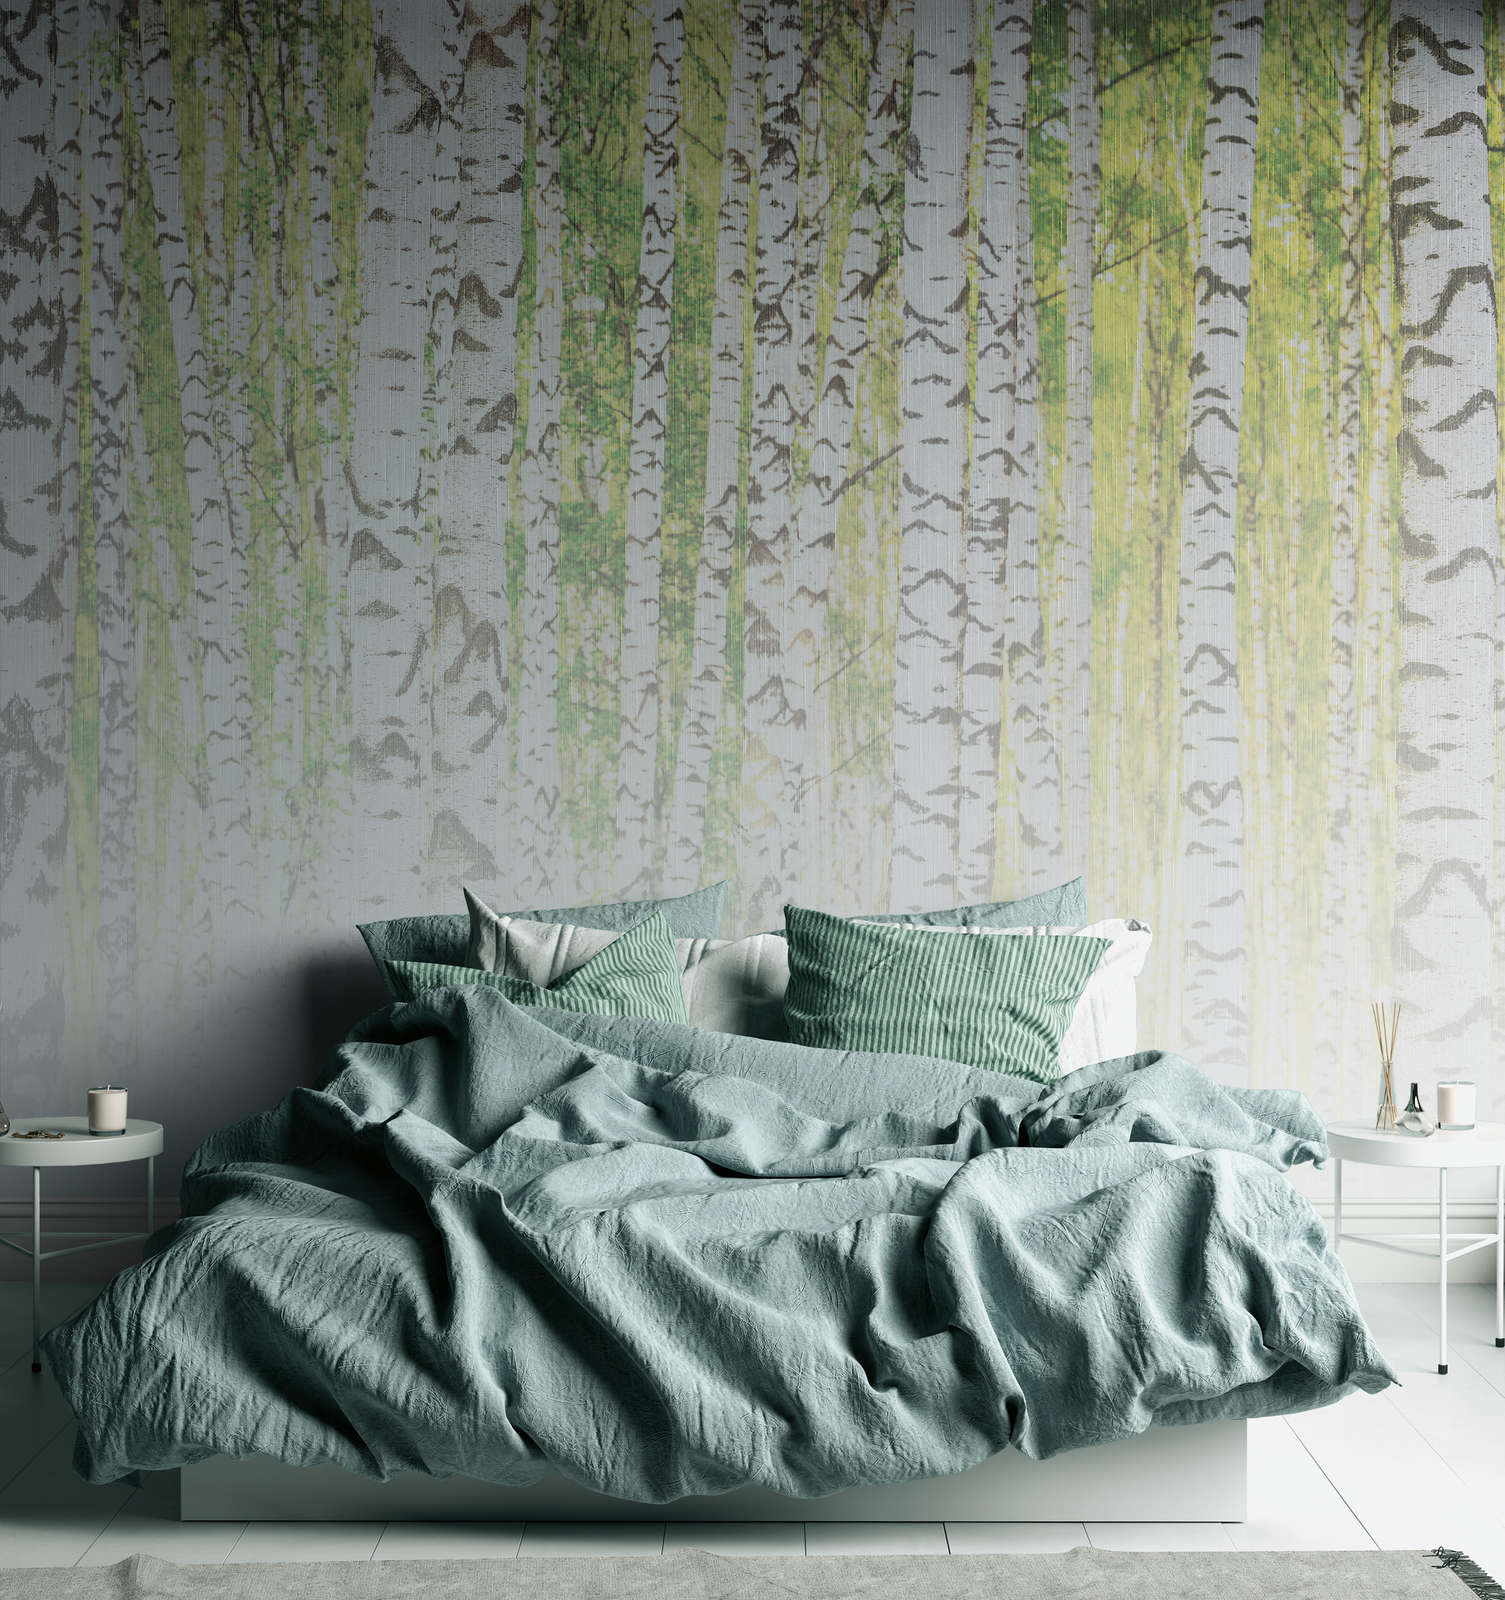             Digital behang met berkenbos in linnen textuur look - groen, wit, zwart
        